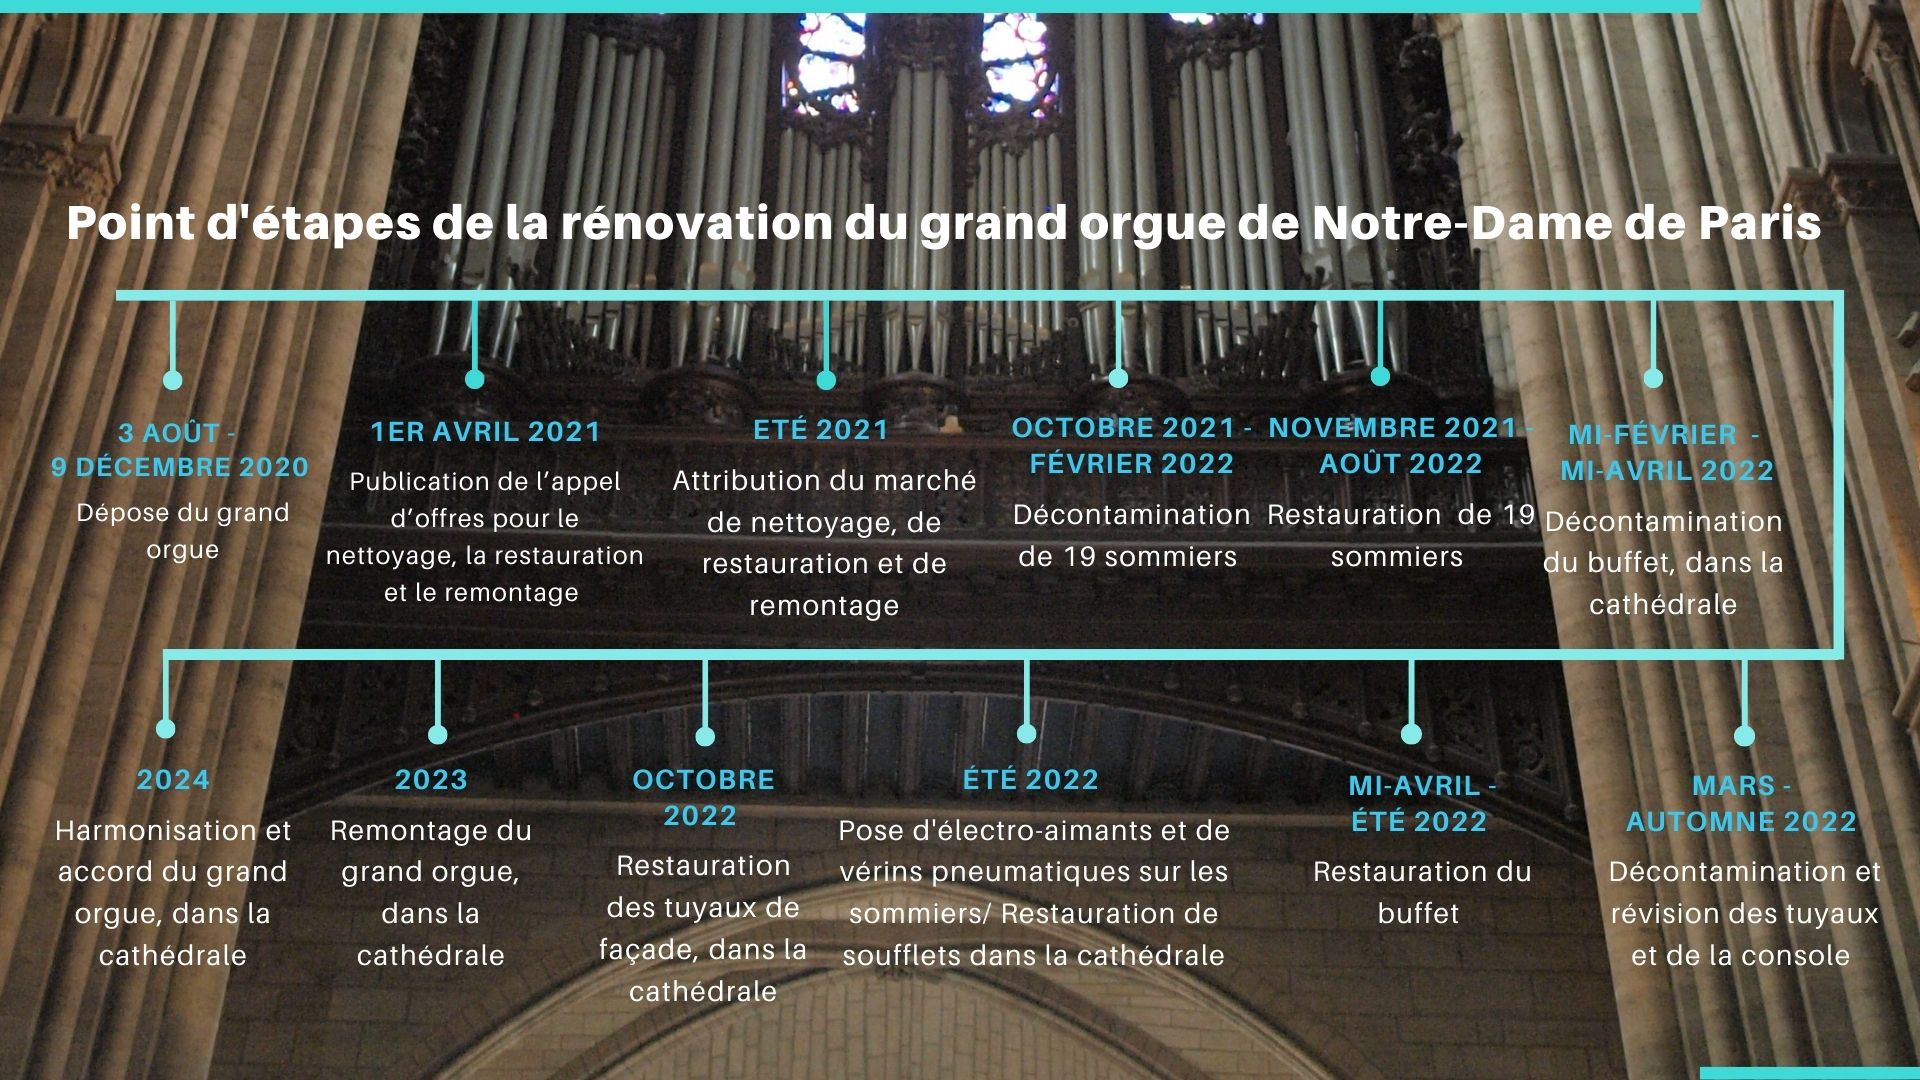 Point d'étapes de la restauration du grand-orgue de Notre-Dame de Paris